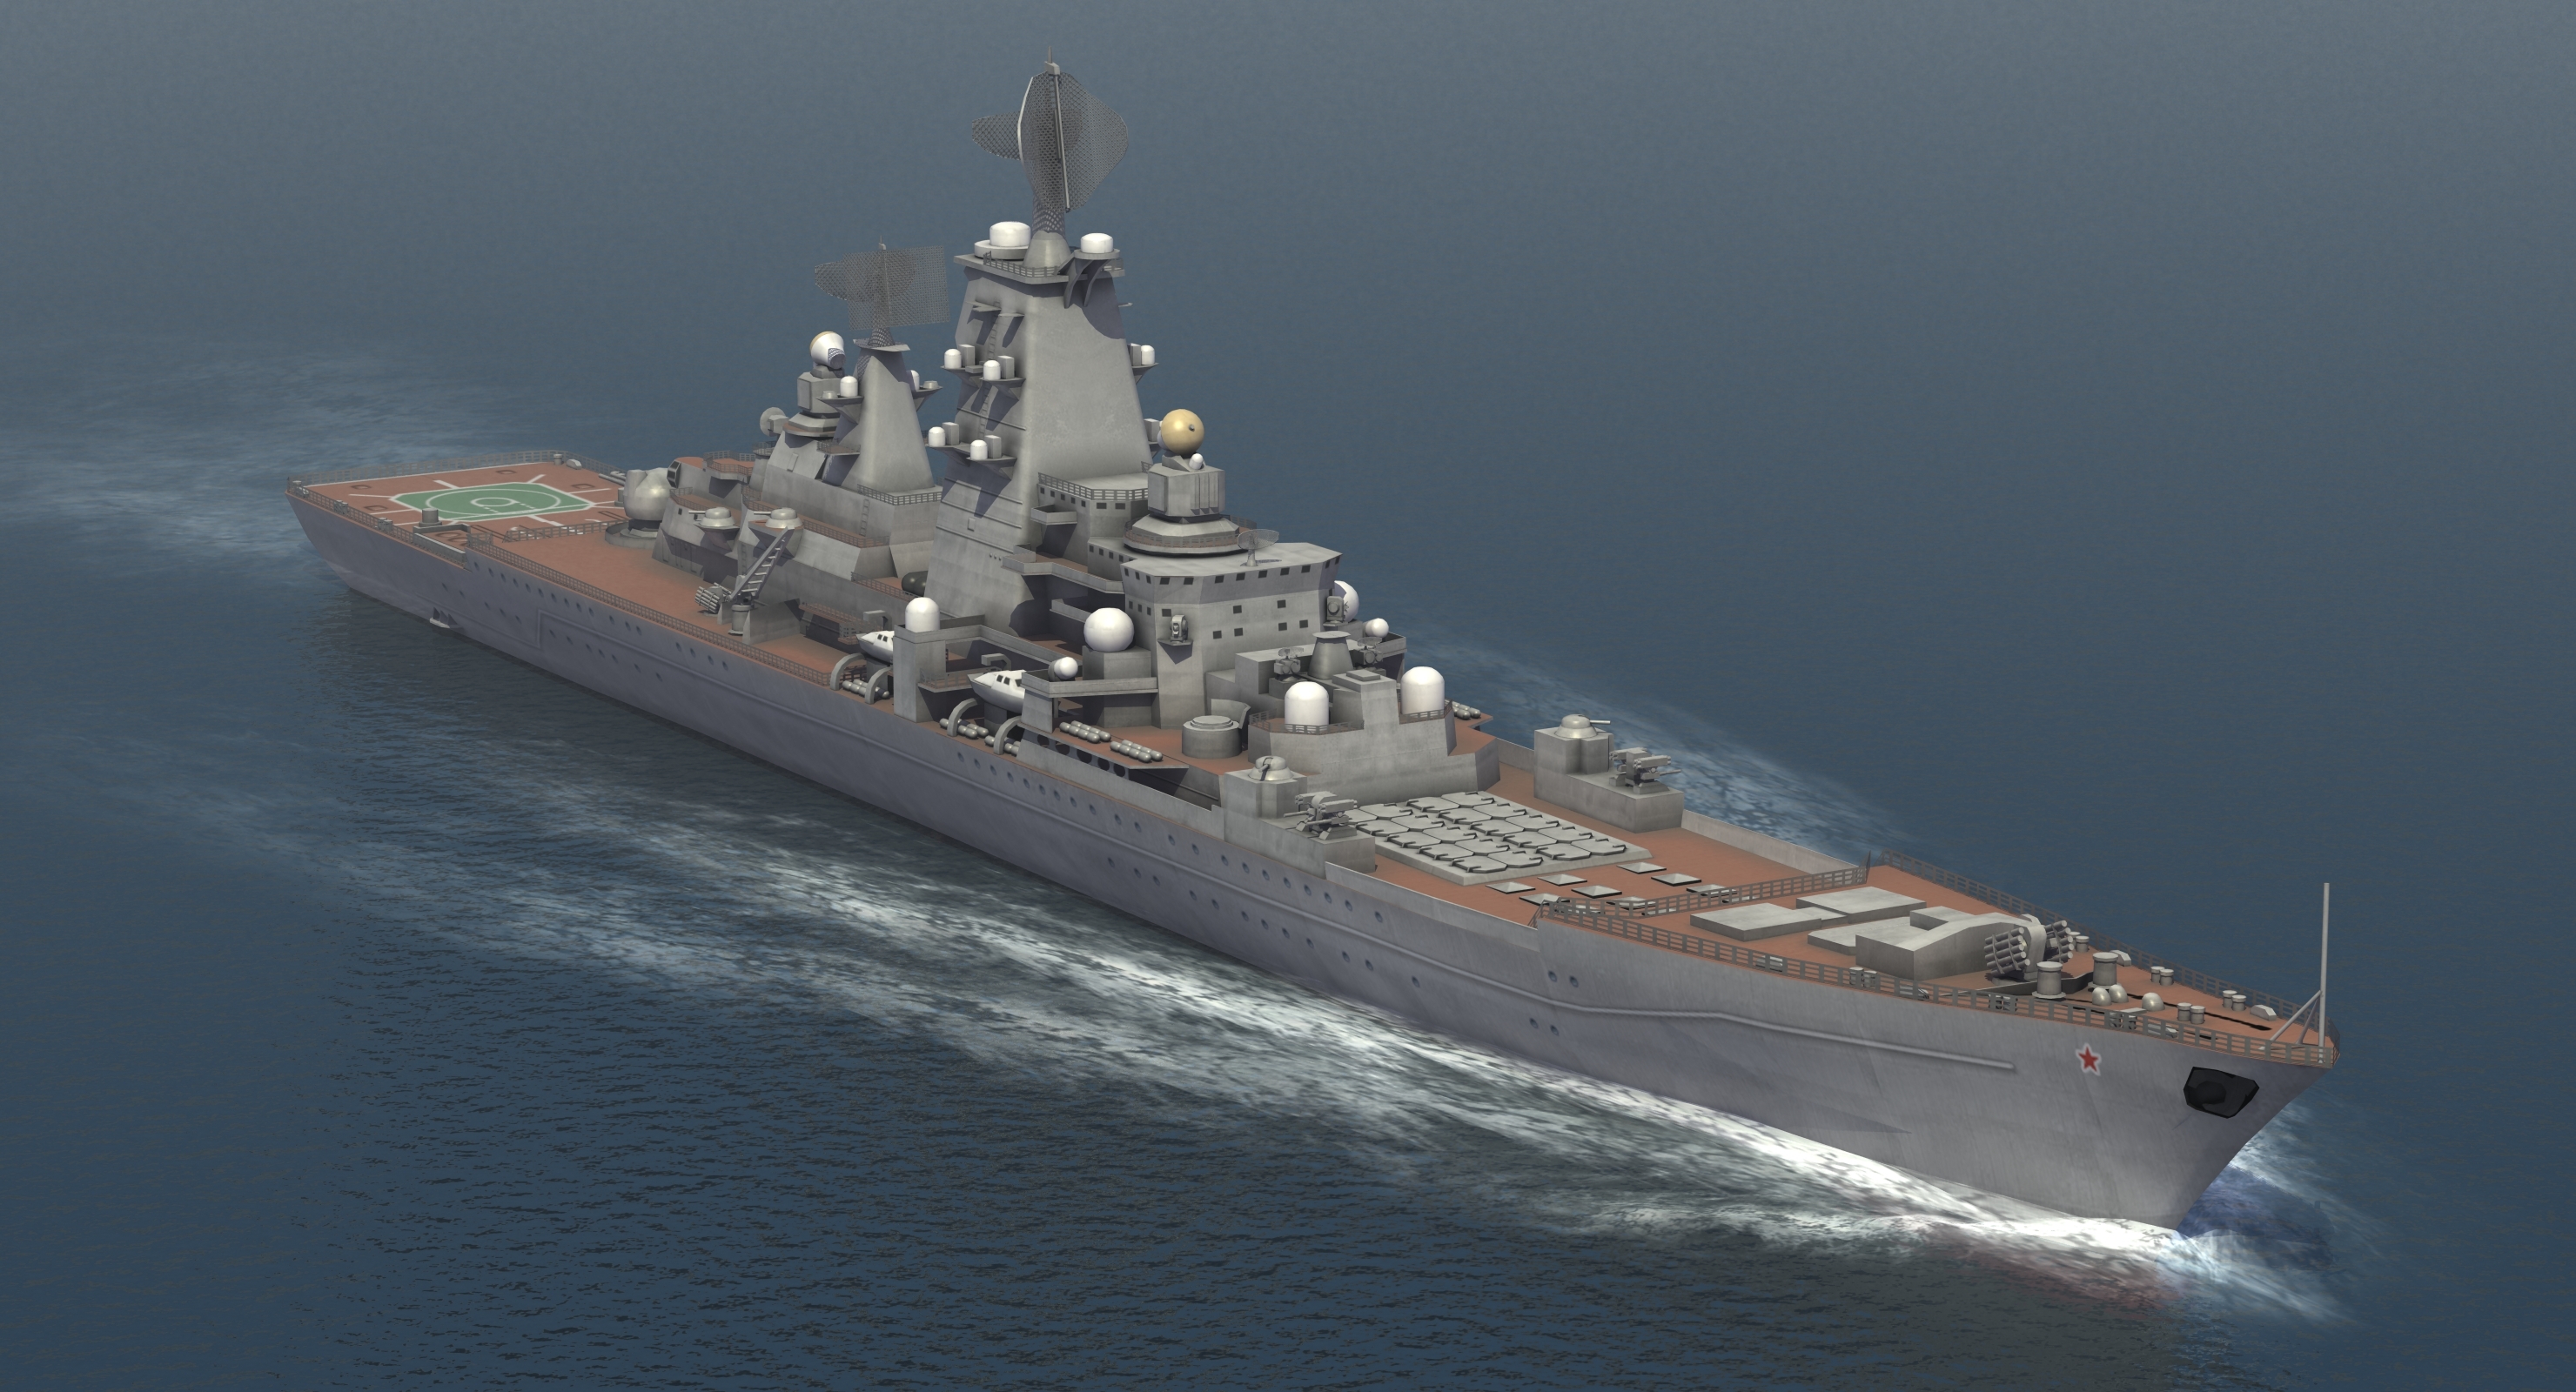 基洛夫级巡洋舰设计图图片